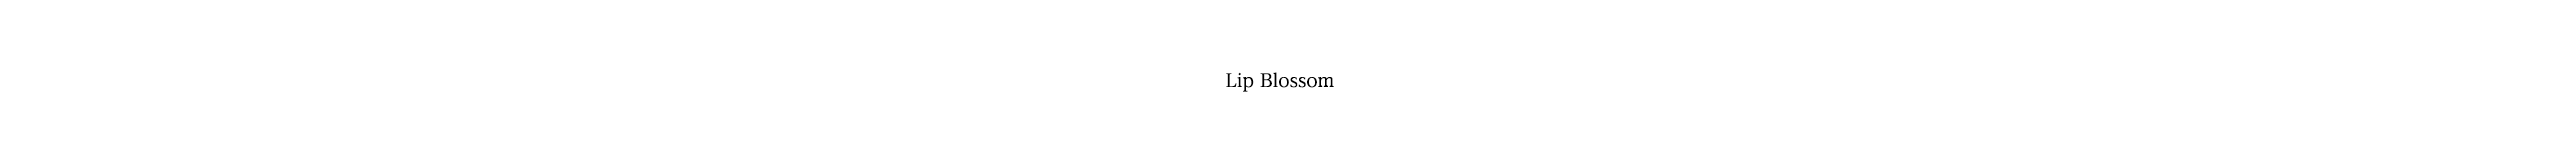 Lip Blossom